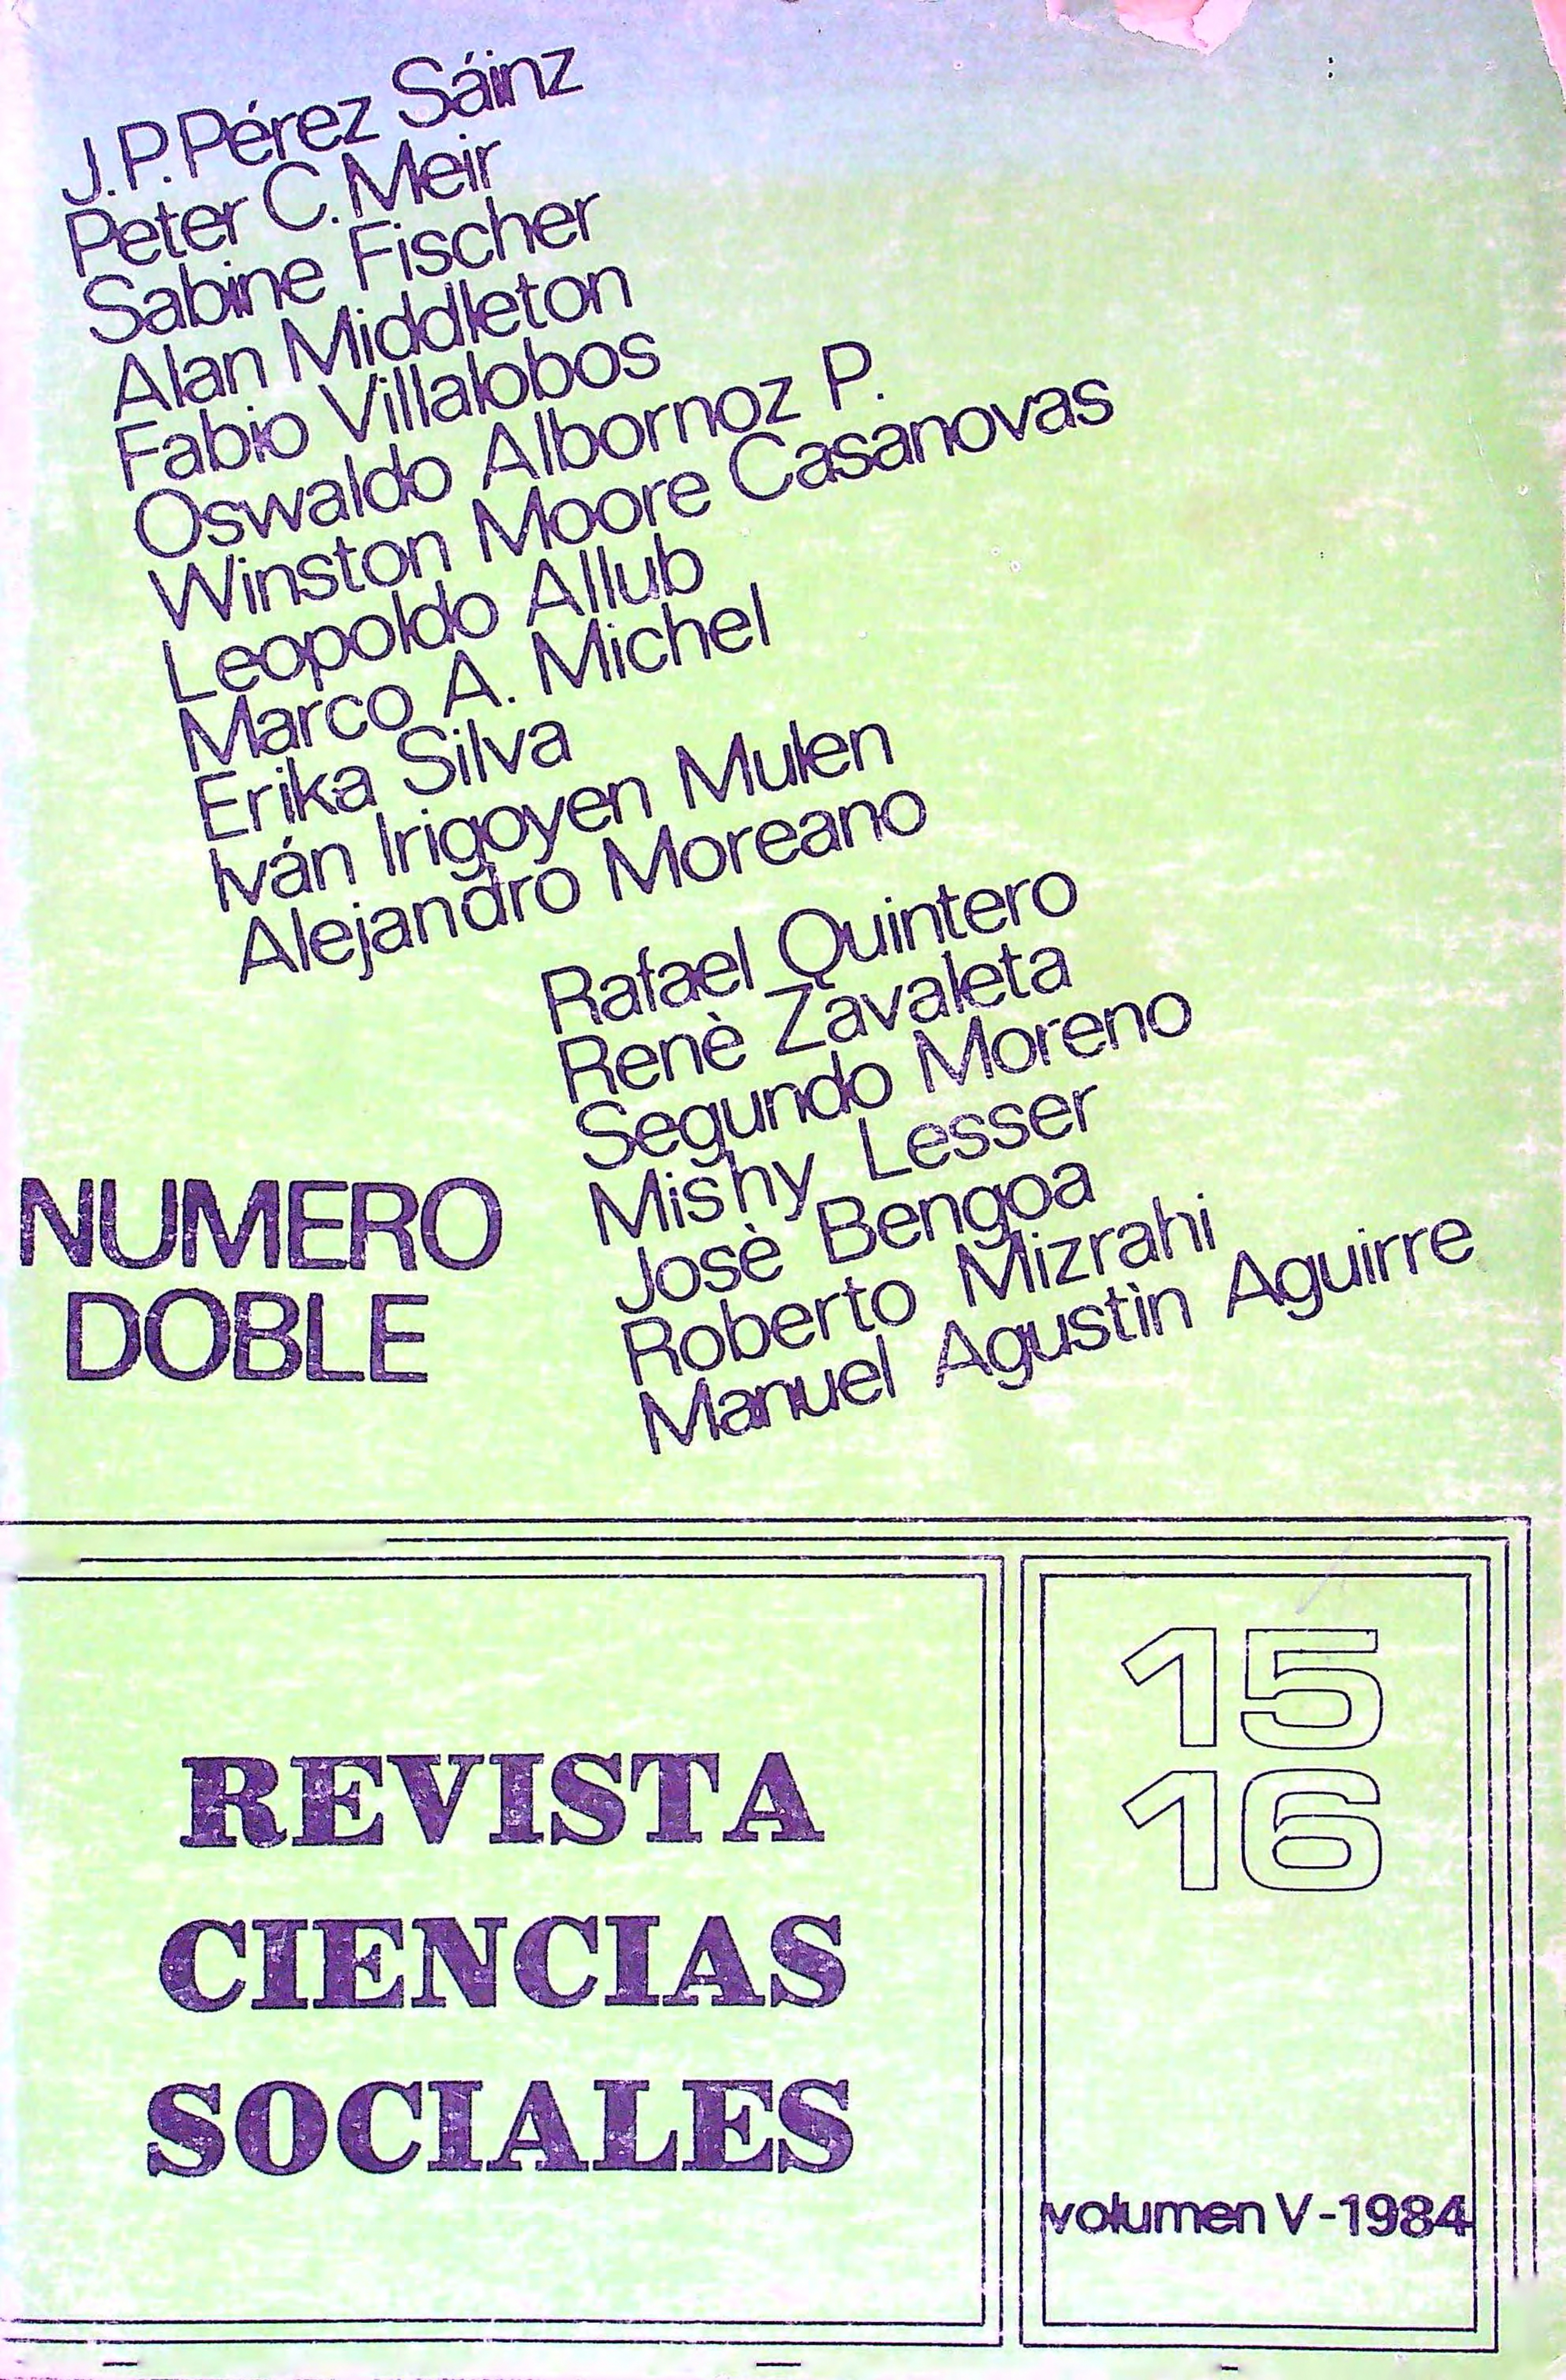 					Ver Vol. 5 Núm. 15-16 (1984)
				